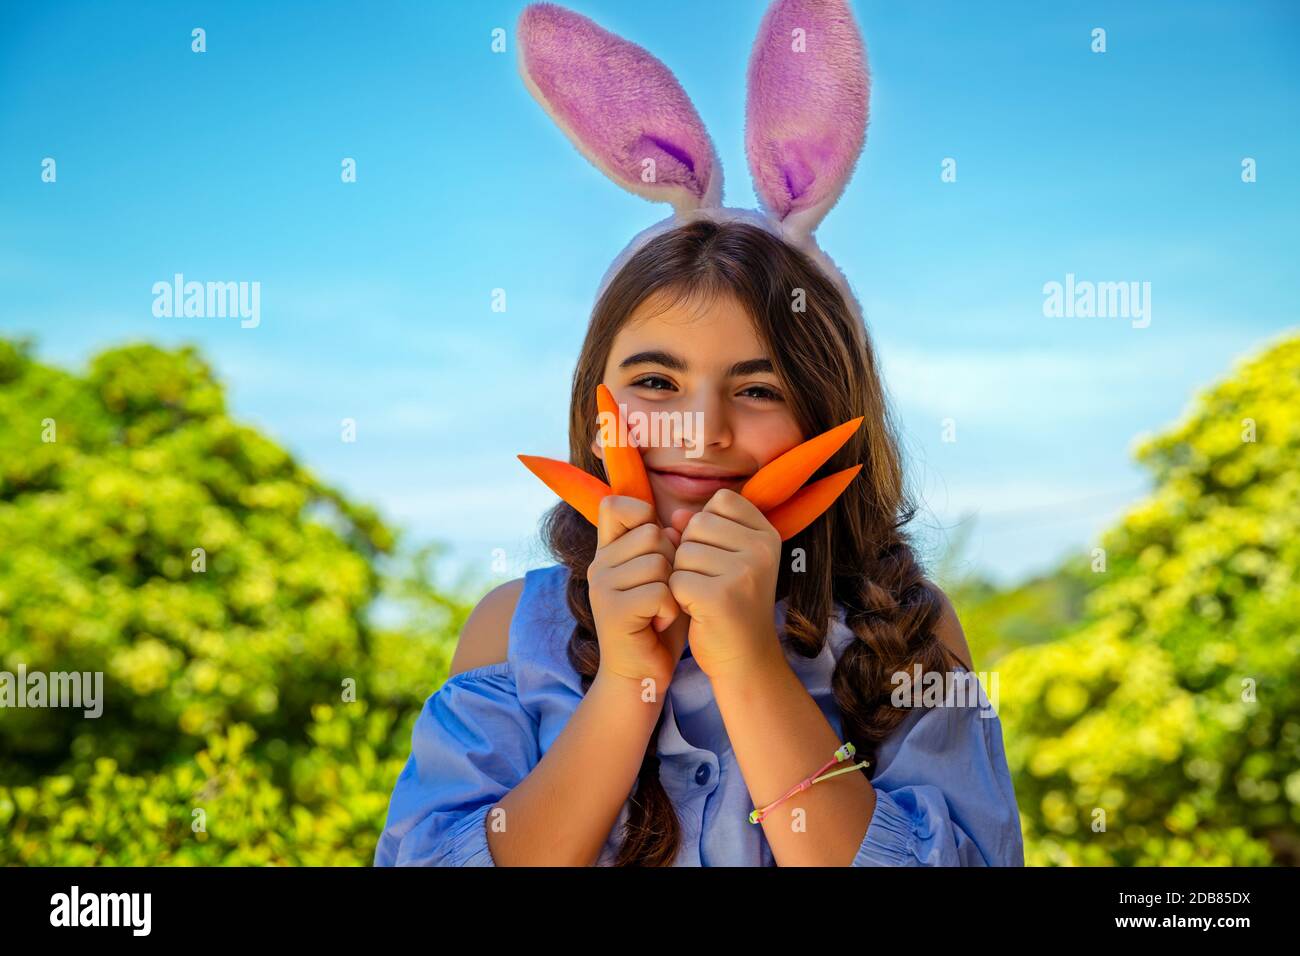 Portrait eines niedlichen kleinen Mädchens, gekleidet als Hünenspiel mit Karotten, Gartenarbeit und Spaß im Freien am sonnigen Frühlingstag, Osterfeier Outdoo Stockfoto